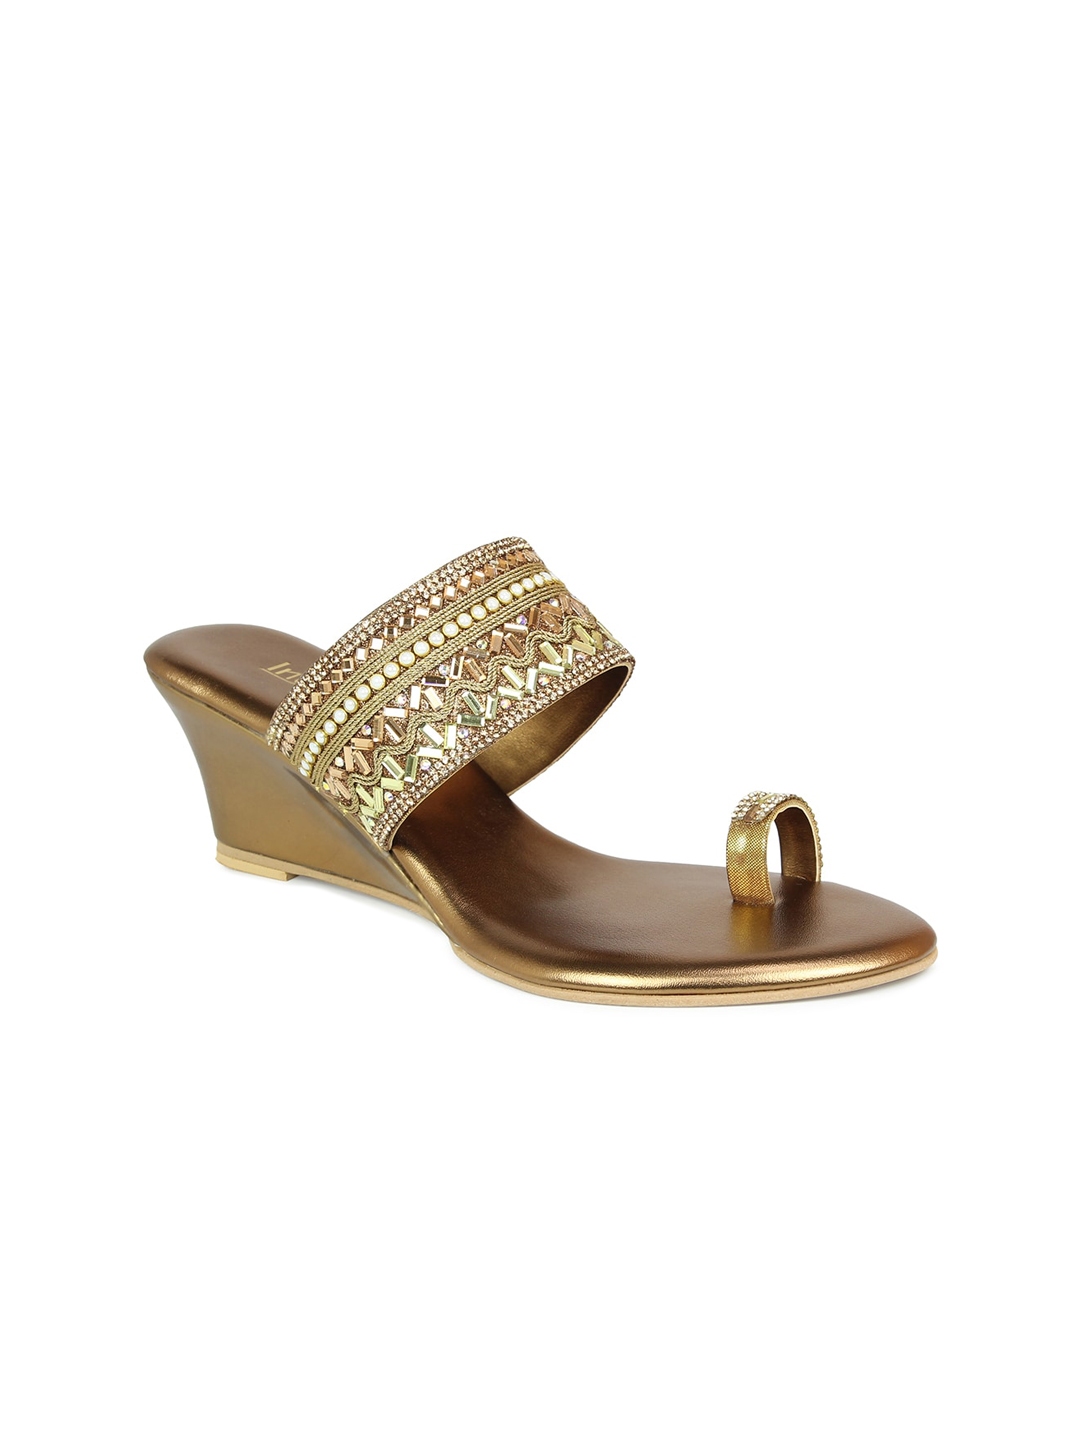 Buy Inc 5 Gold Toned Ethnic Wedge Sandals - Heels for Women 15966332 ...